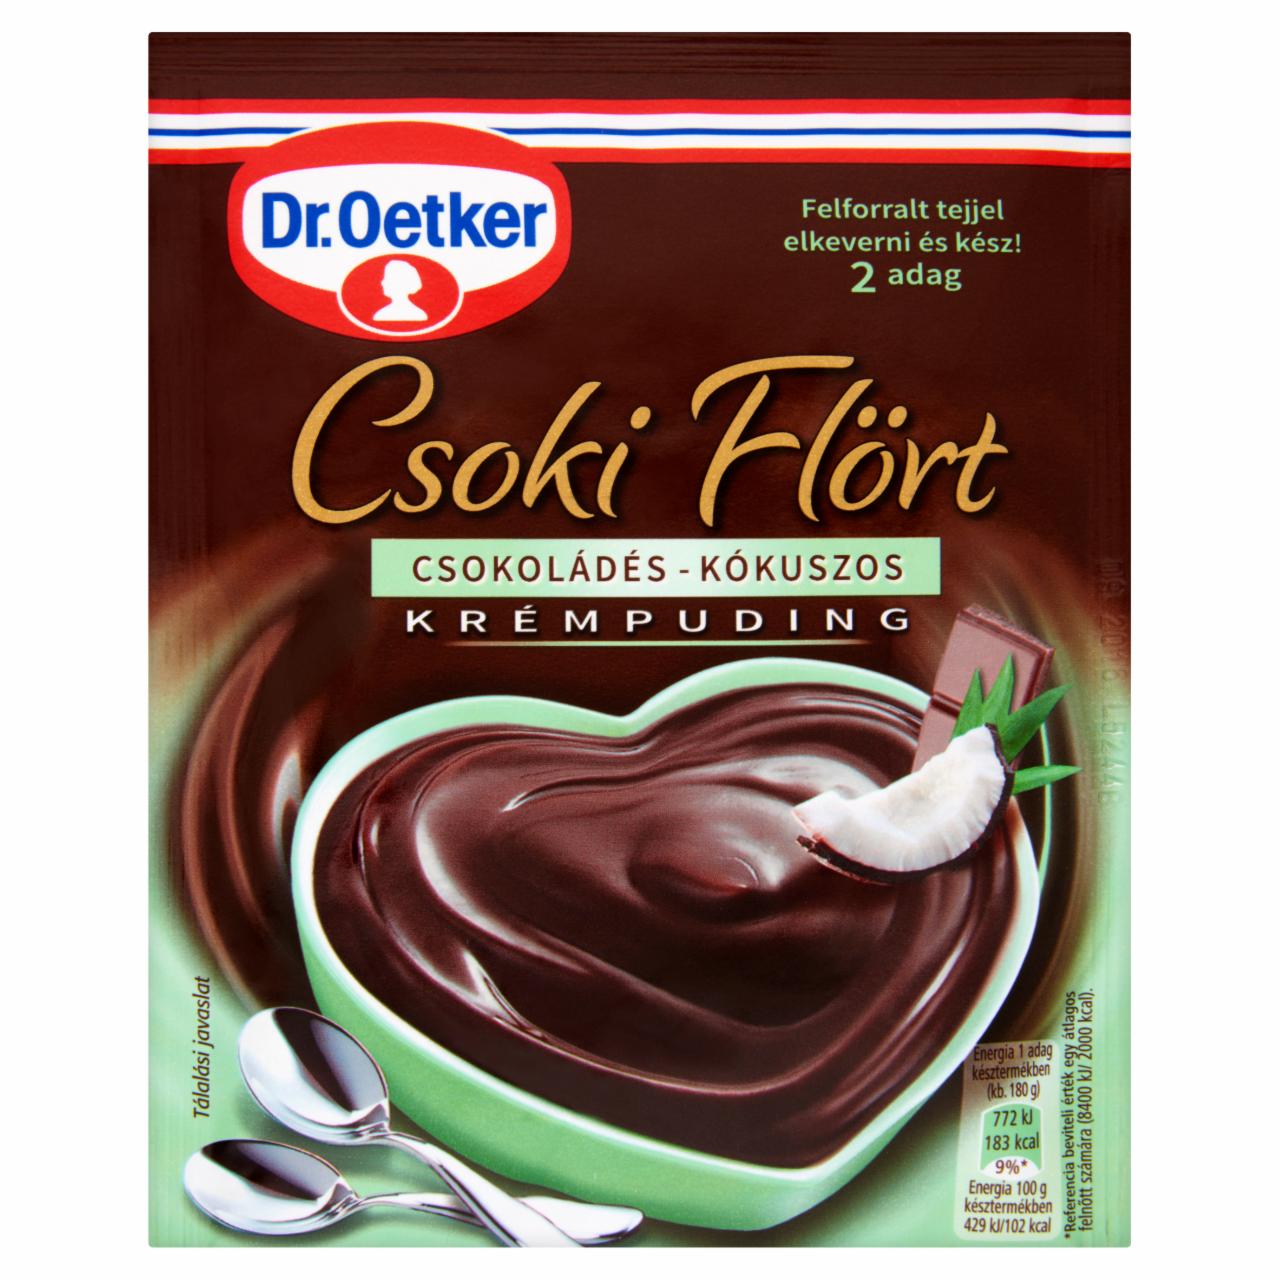 Képek - Dr. Oetker Csoki Flört csokoládés-kókuszos krémpudingpor 60 g